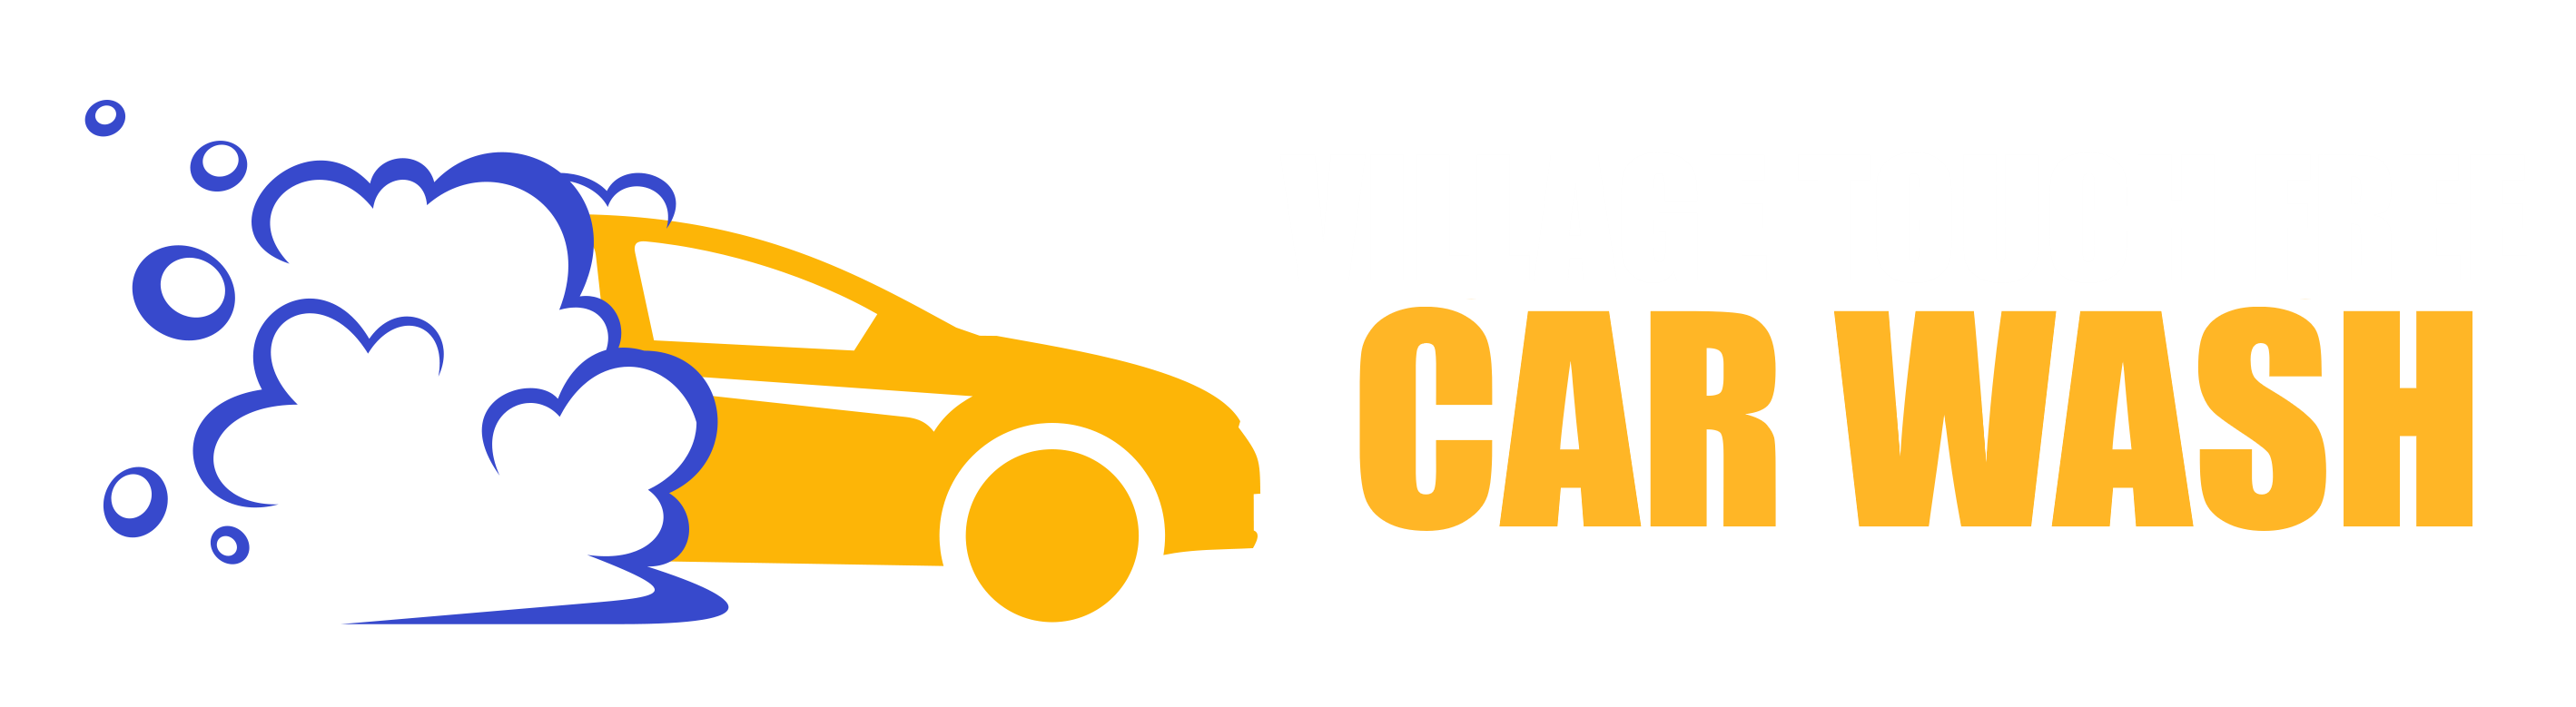 Village Car Wash Clickable Logo